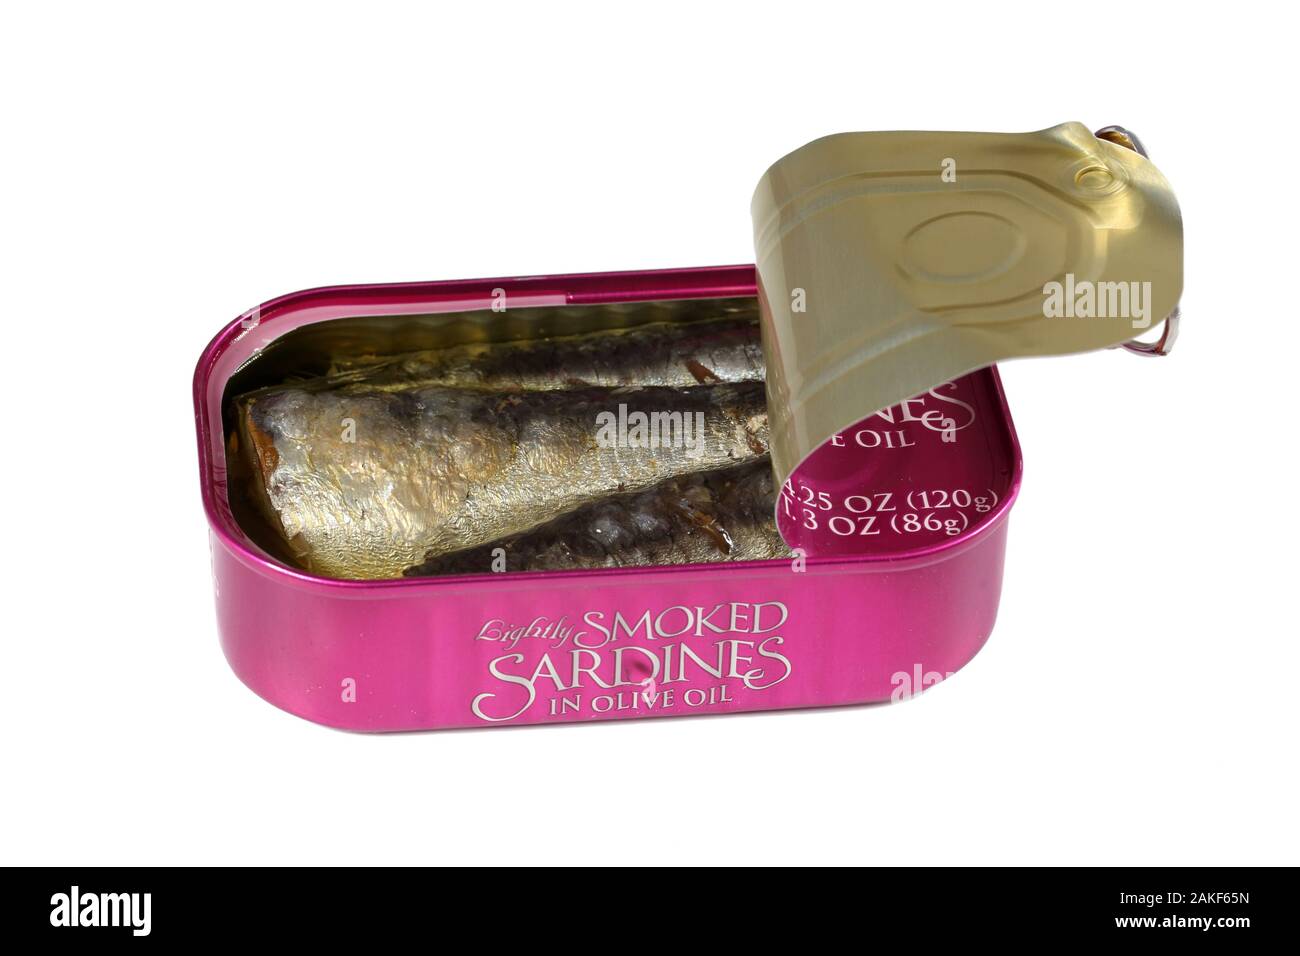 Una lattina aperta di sardine marchio Trader Joes in olio d'oliva isolato su sfondo bianco. Immagine ritagliata per l'illustrazione e l'uso editoriale. Foto Stock